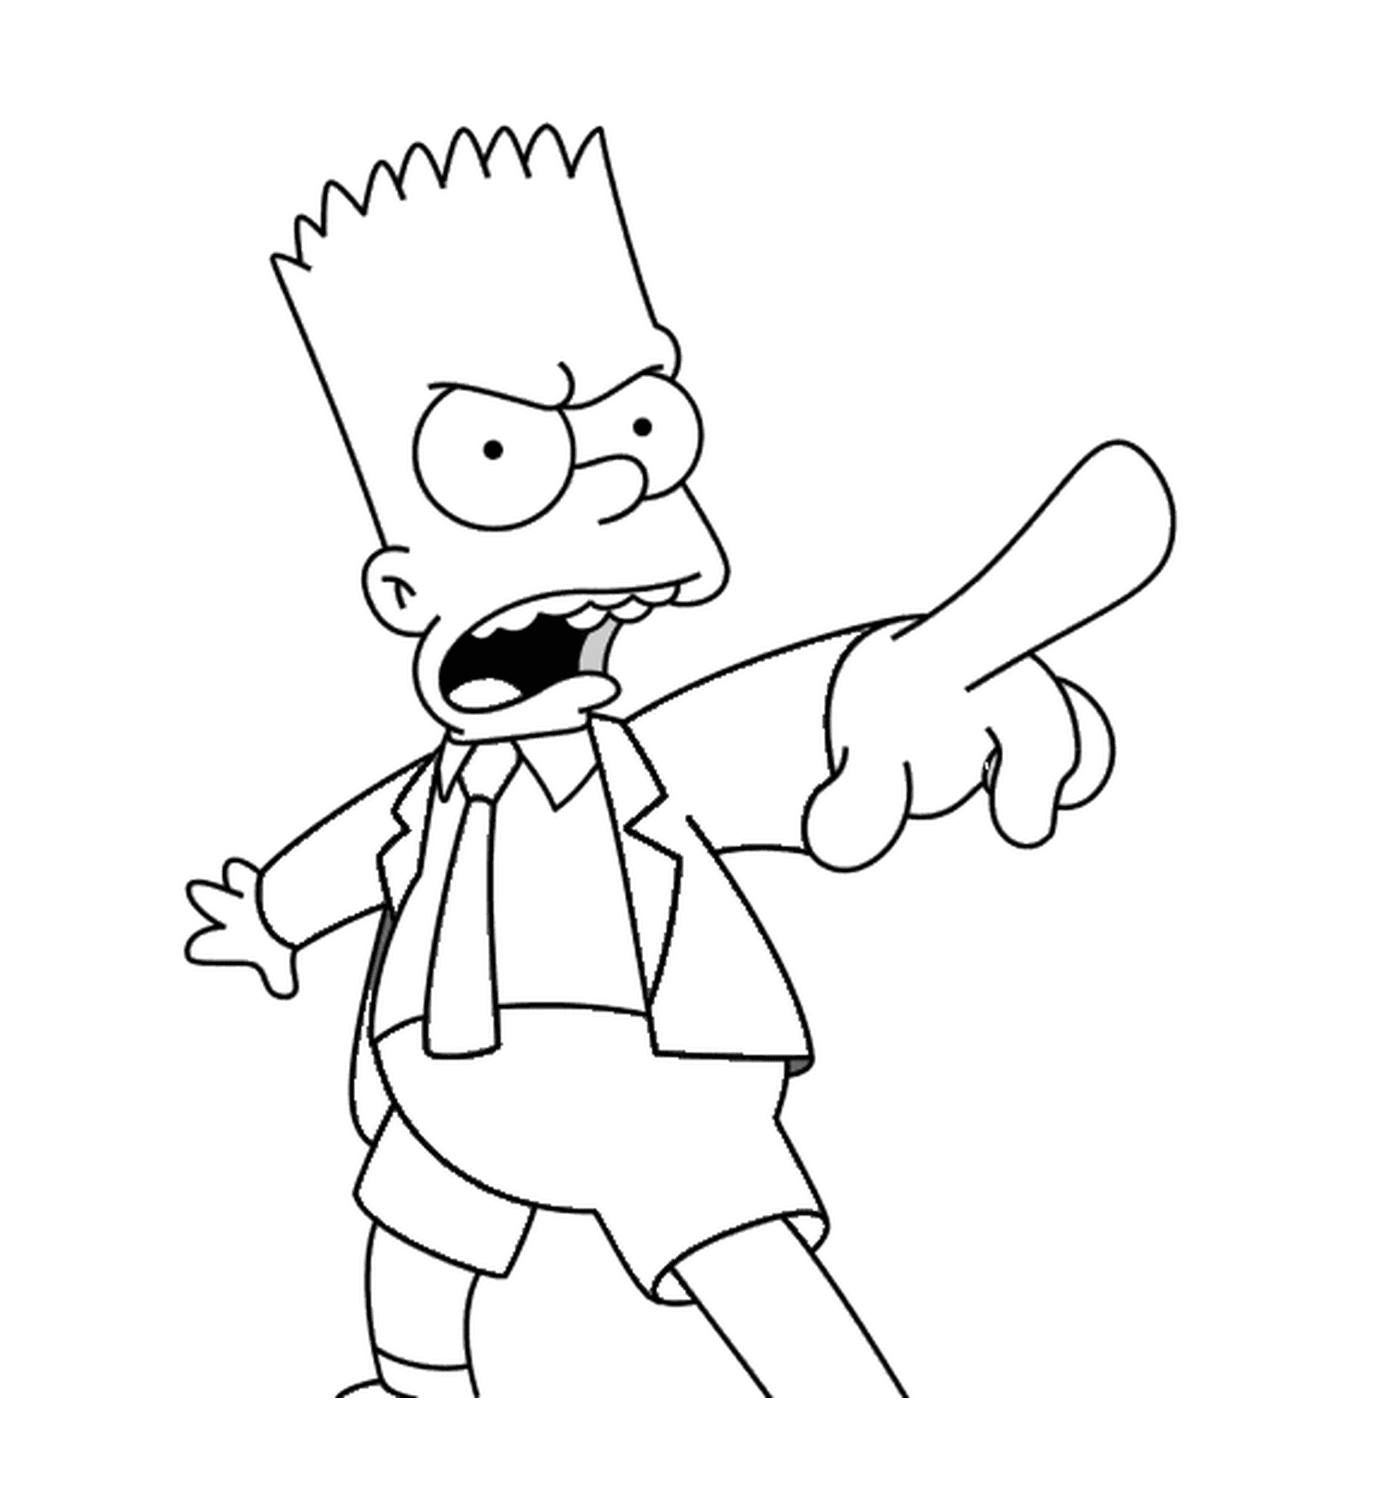   Bart en colère avec une cravate 